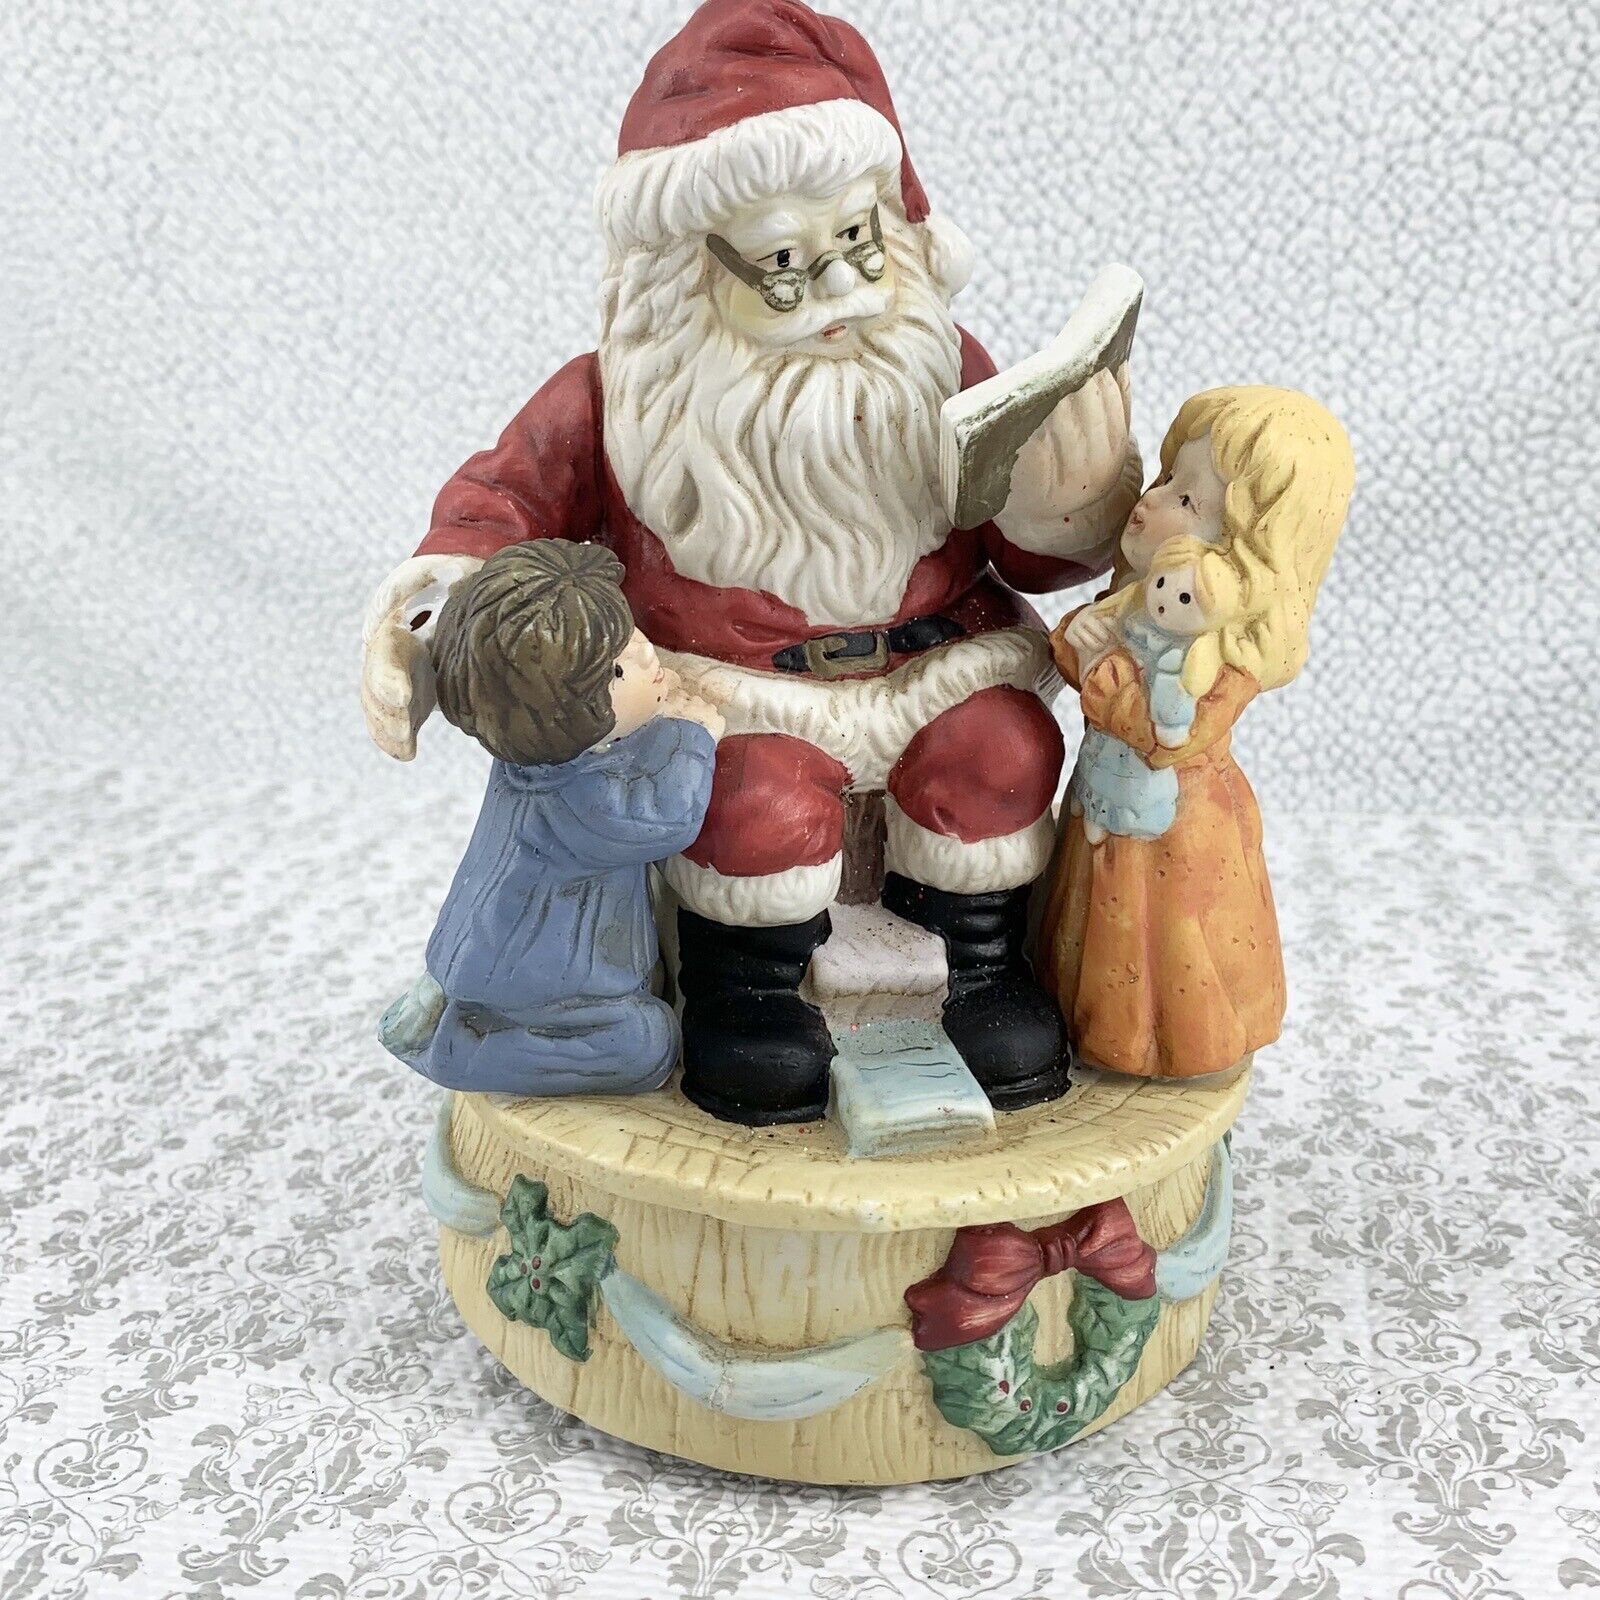 VTG Santa Claus & Children Rotating Musical Christmas Decor 90s Whimsical *READ*